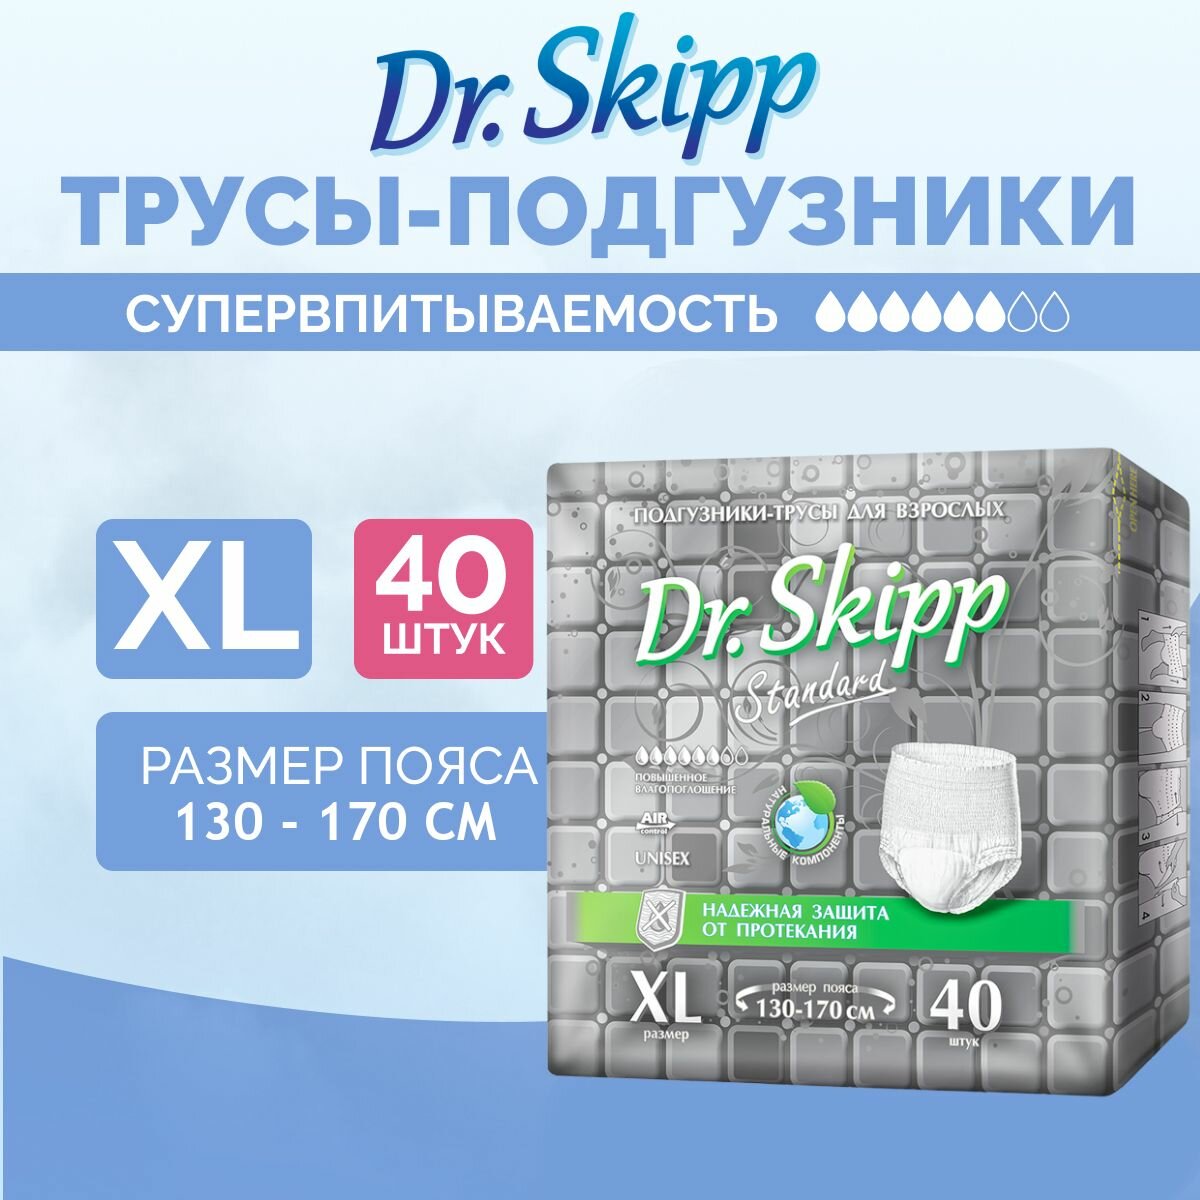 Подгузники-трусы для взрослых Dr. Skipp Standard XL, 40 шт., 8153